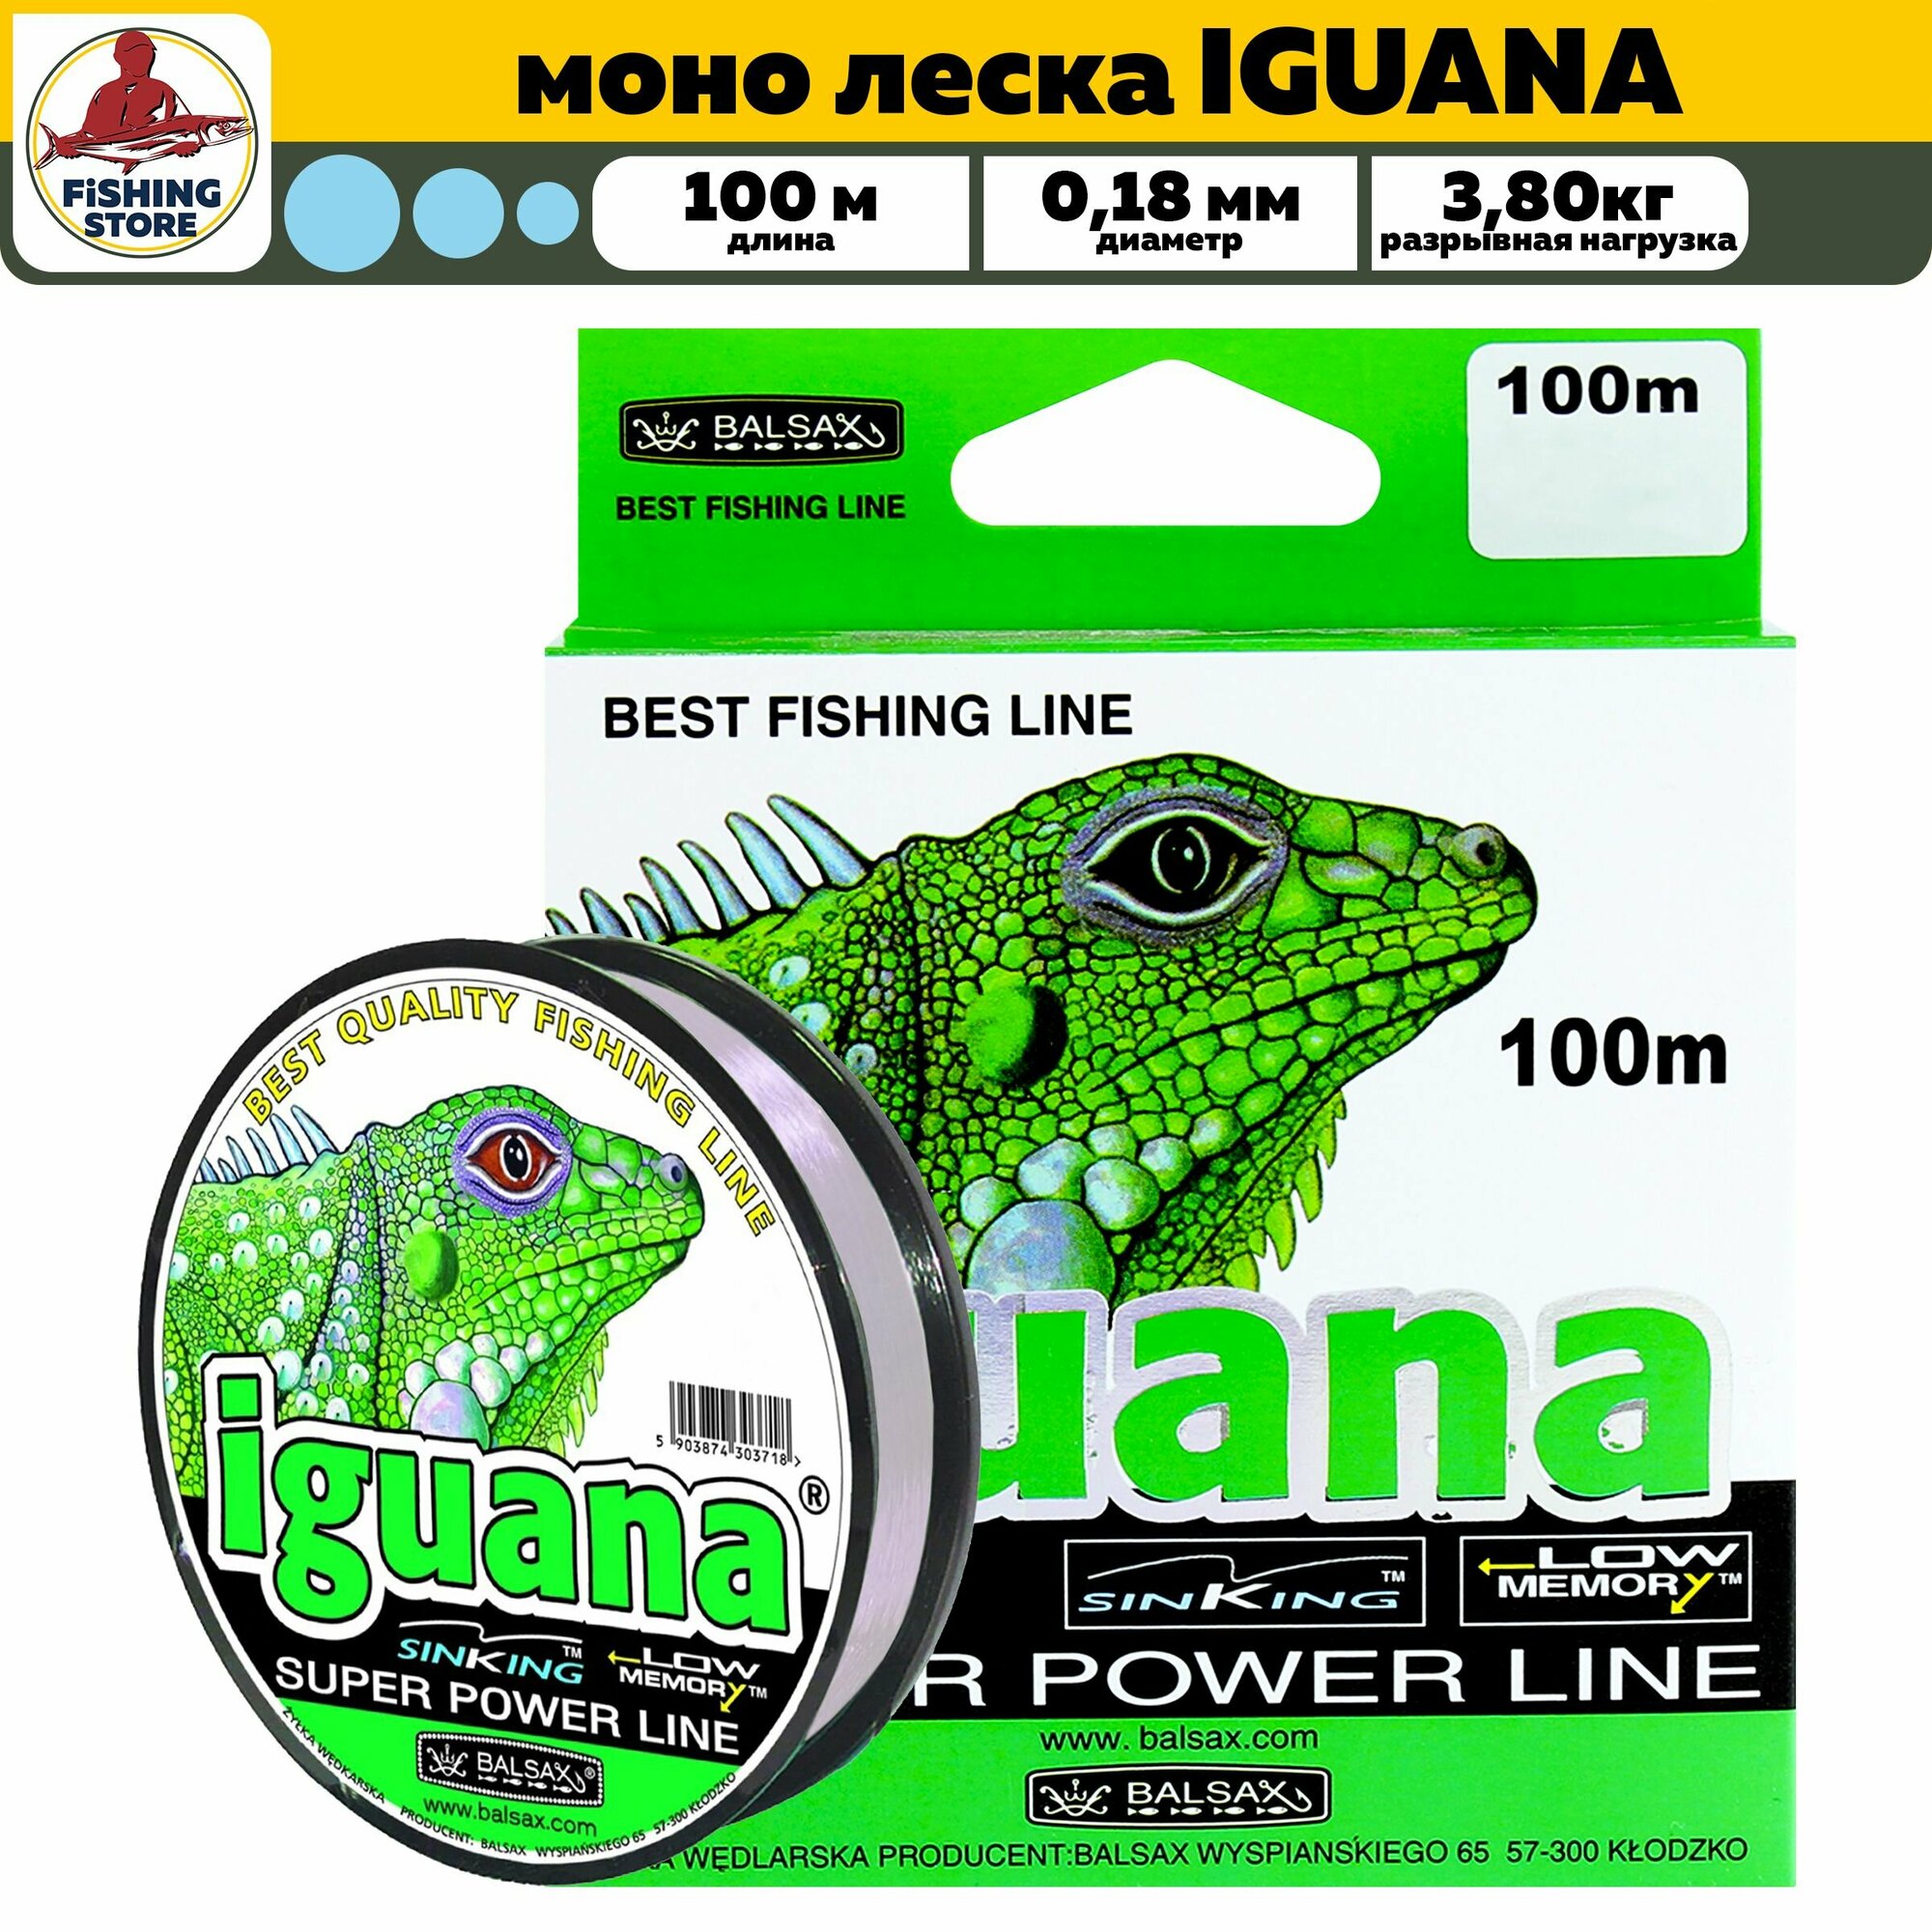 Монофильная леска Balsax Iguana Super power line 100м 0,18 (прозрачная) 3,80 кг / леска для рыбалки / монка / леска рыболовная